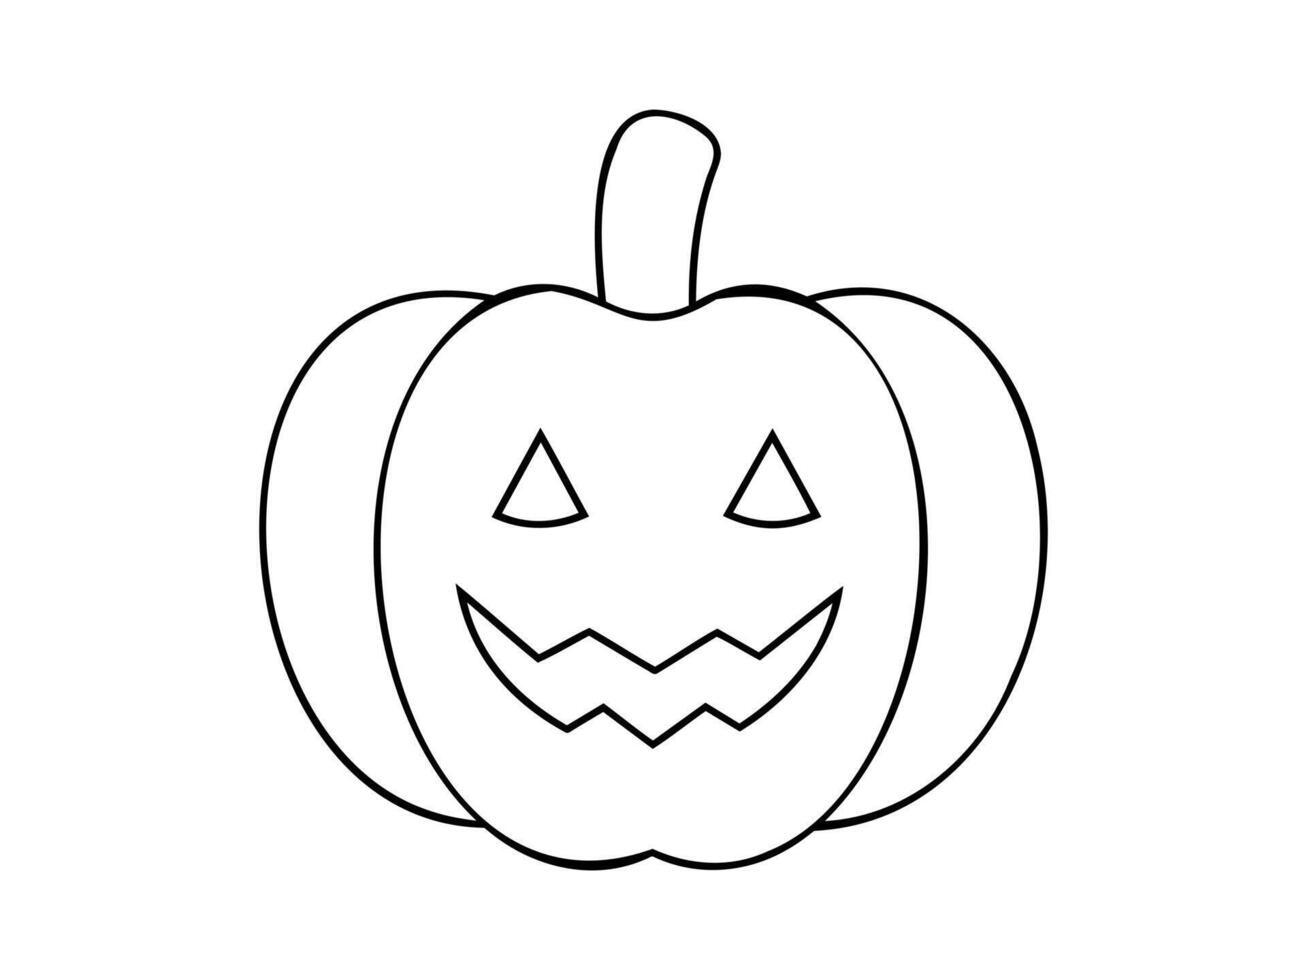 svart översikt av leende halloween pumpa. illustration. vänlig Pumpalykta. isolerat på vit bakgrund begrepp av halloween, festlig dekor, höst firande, oktober tradition. ikon. vektor